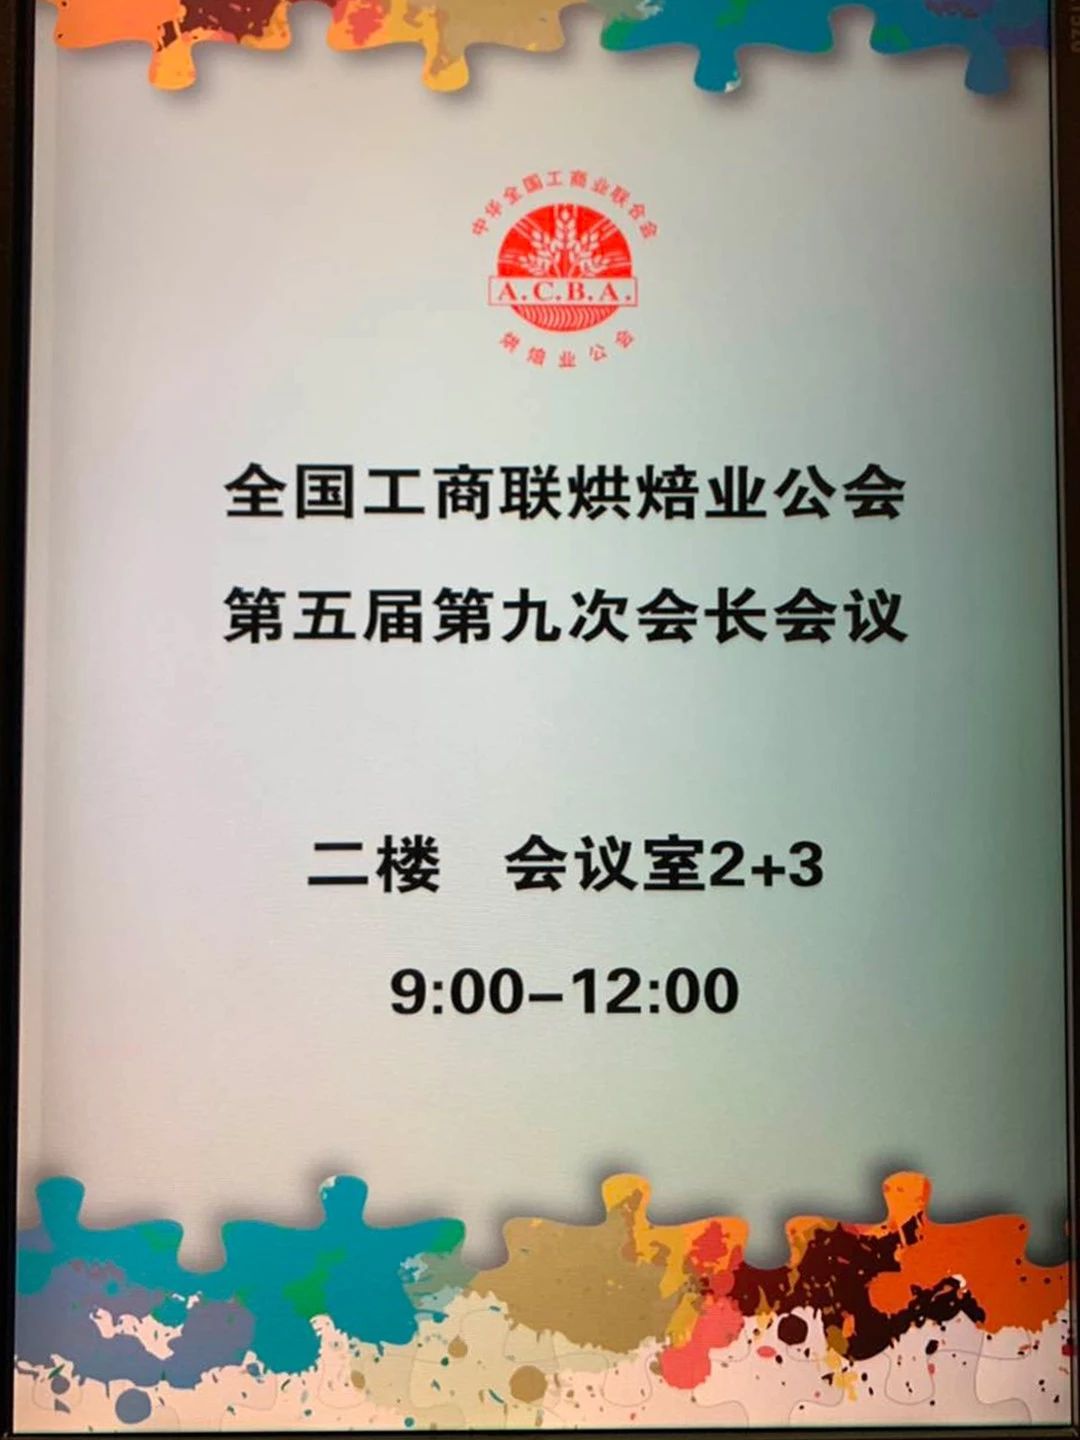 全国工商联烘焙业公会第五届第九次会长会议在广州举行